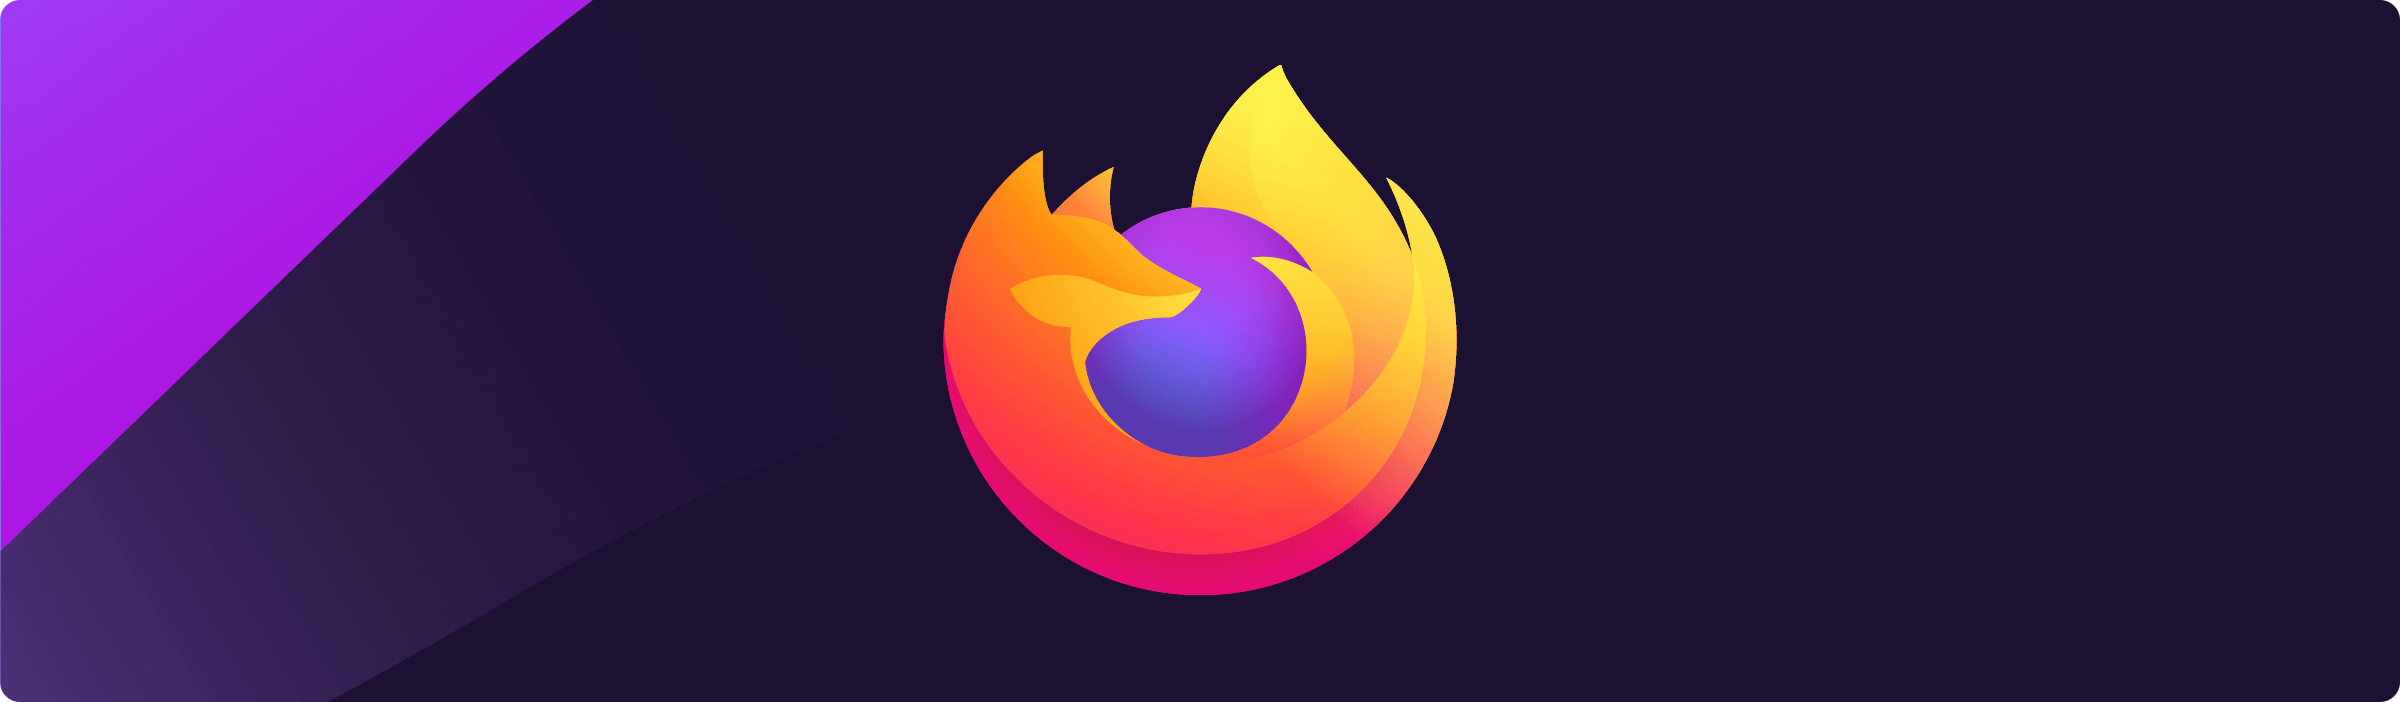 Firefox 86